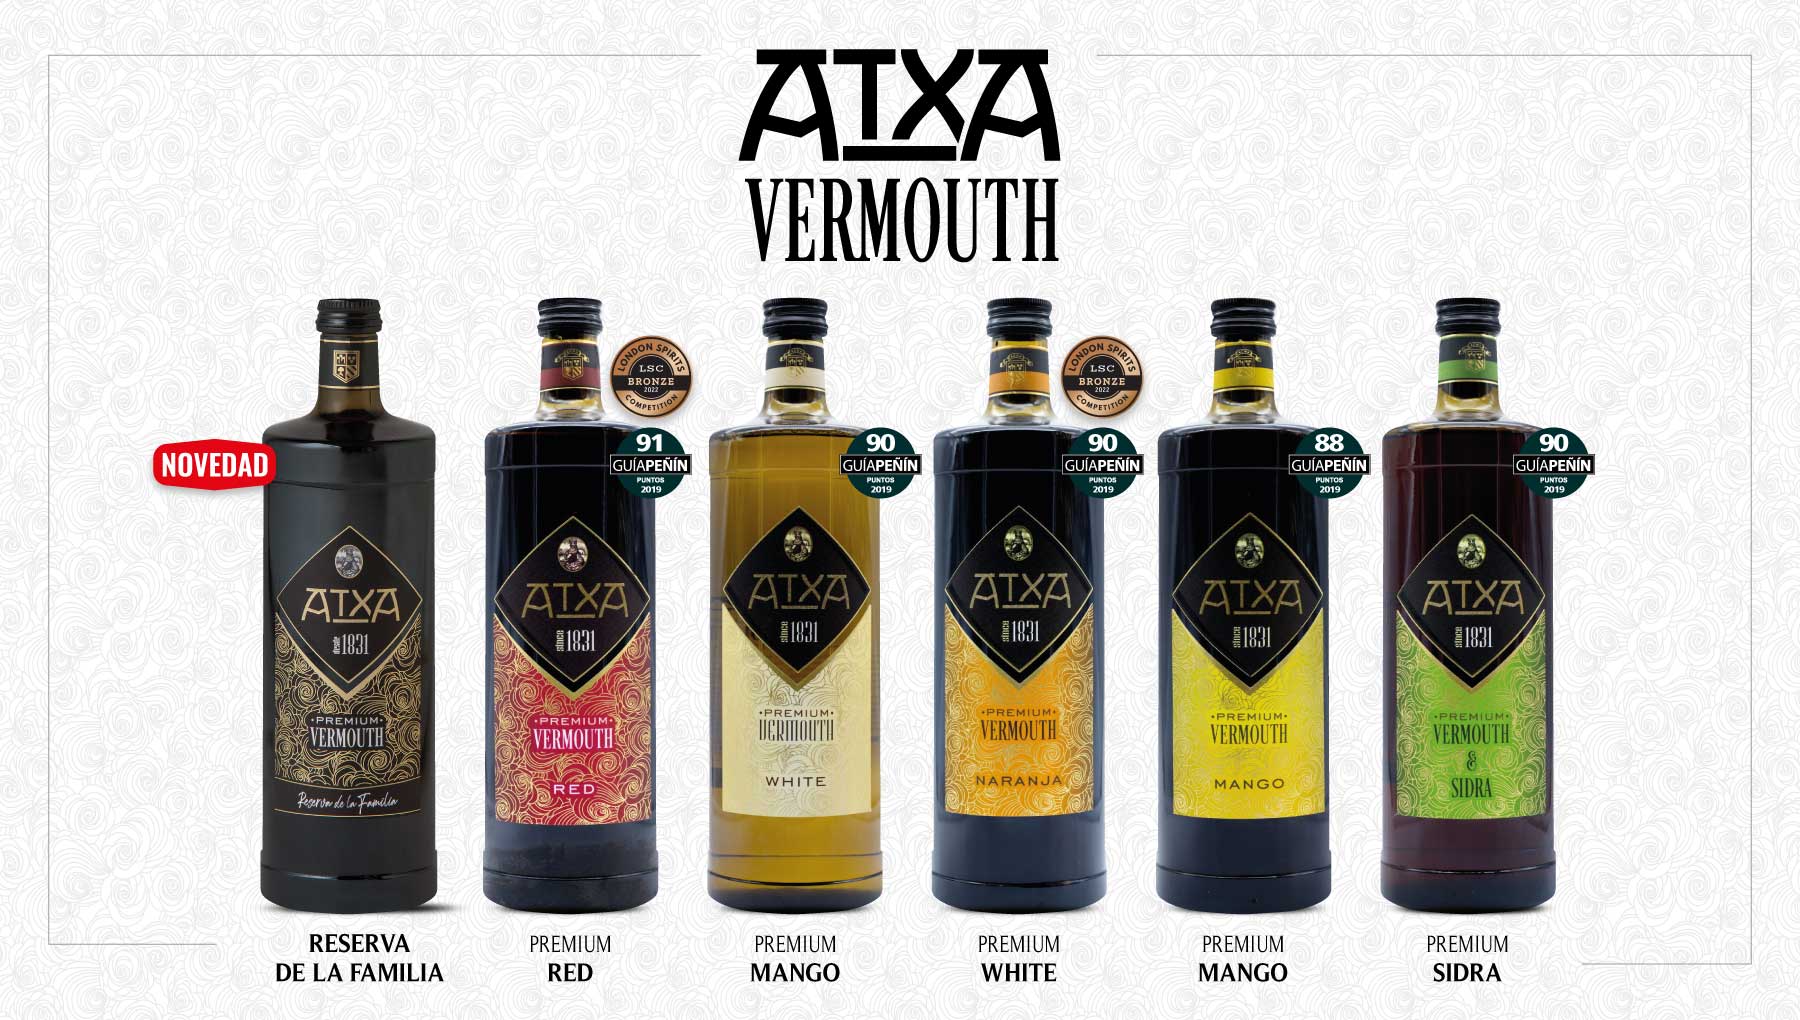 Vermouth Atxa